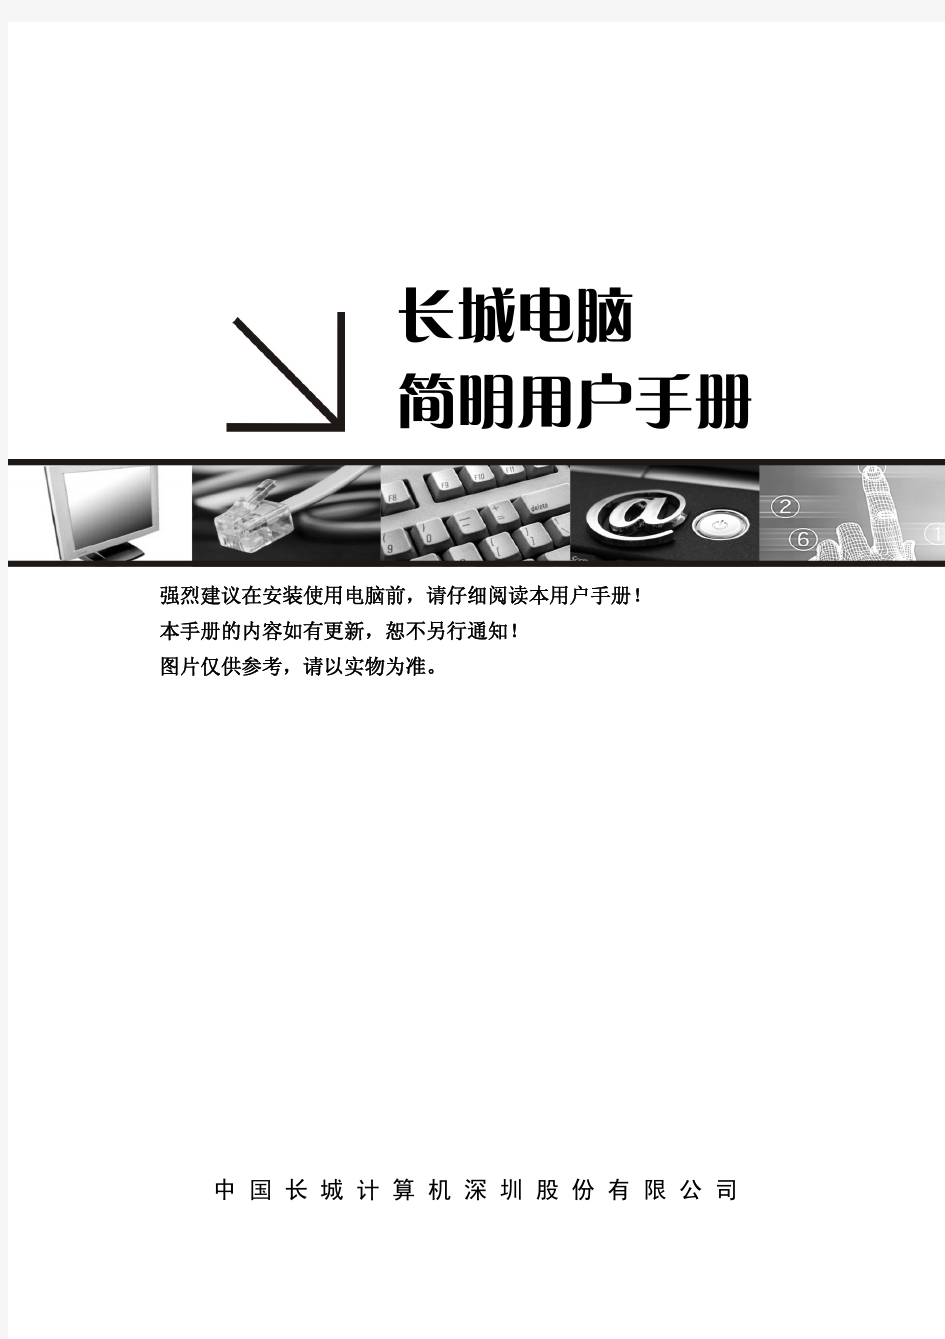 长城电脑俊杰9000+简明用户手册(通用)+V1.0